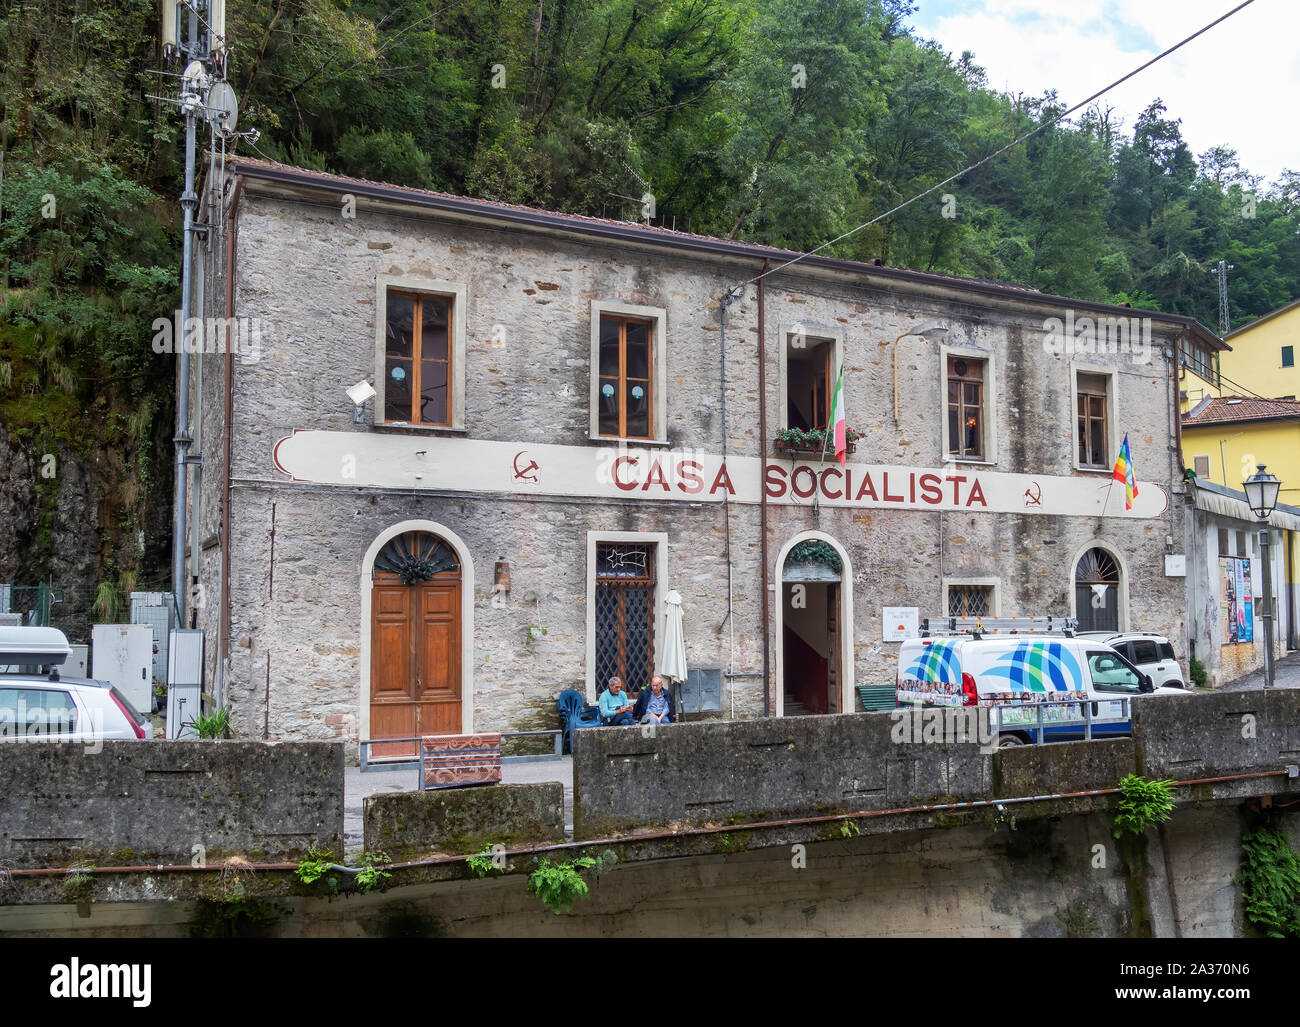 FORNO, Massa Carrara, ITALIEN - September 29, 2019: Blick auf die historisch bedeutsame Gebäude, die Casa Socialista ie sozialistische Haus. Stockfoto